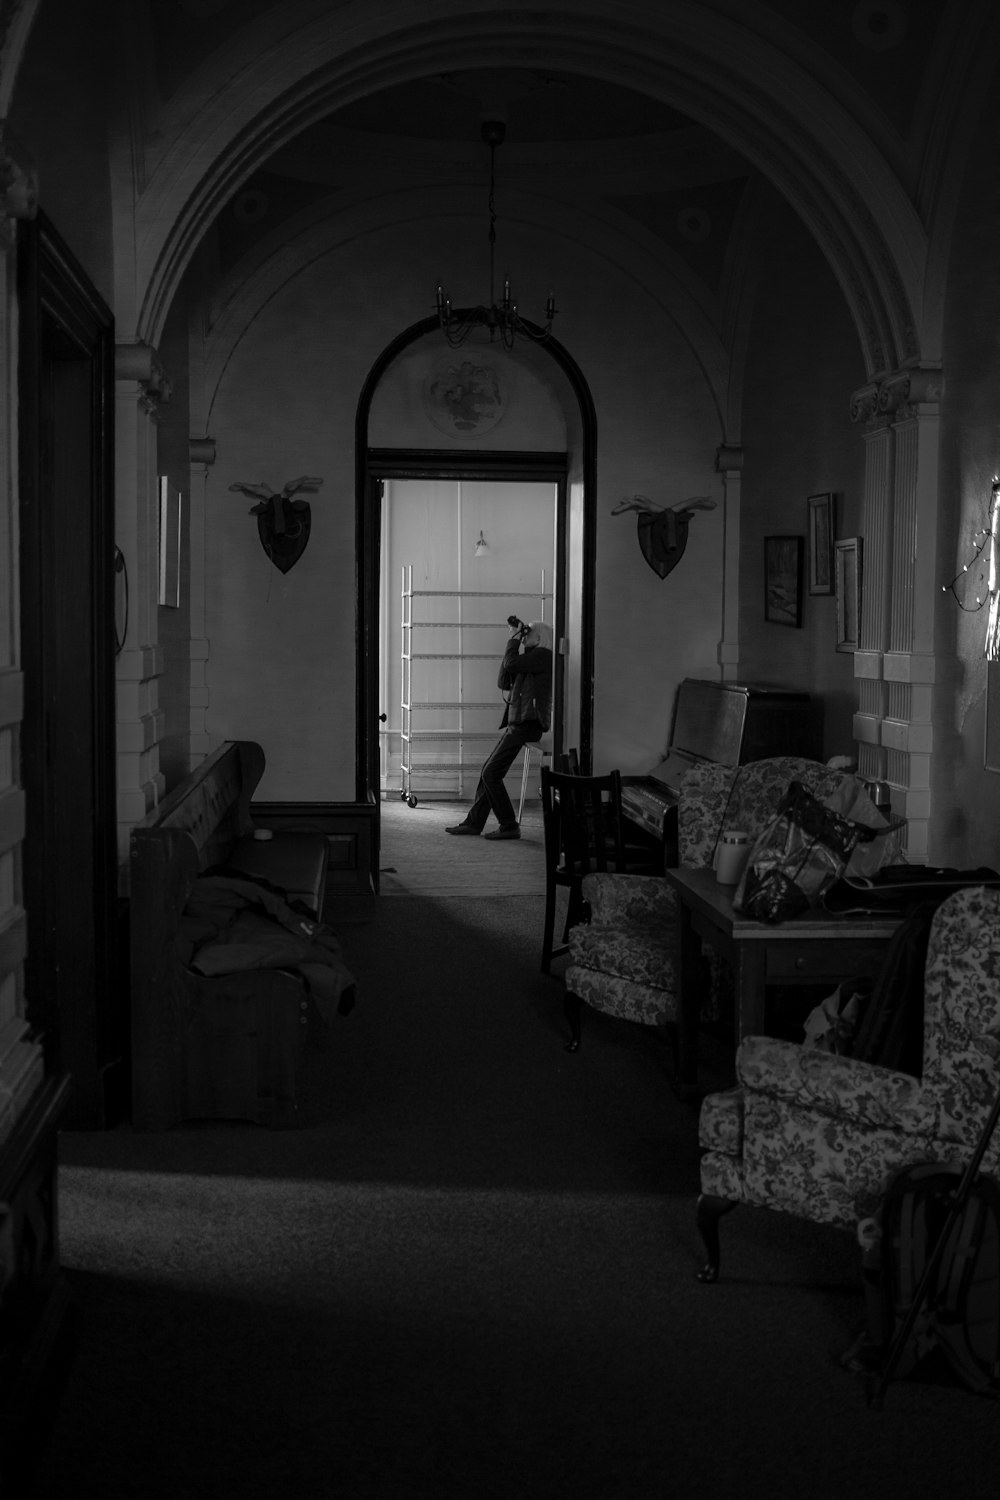 une photo en noir et blanc d’une personne entrant dans une pièce